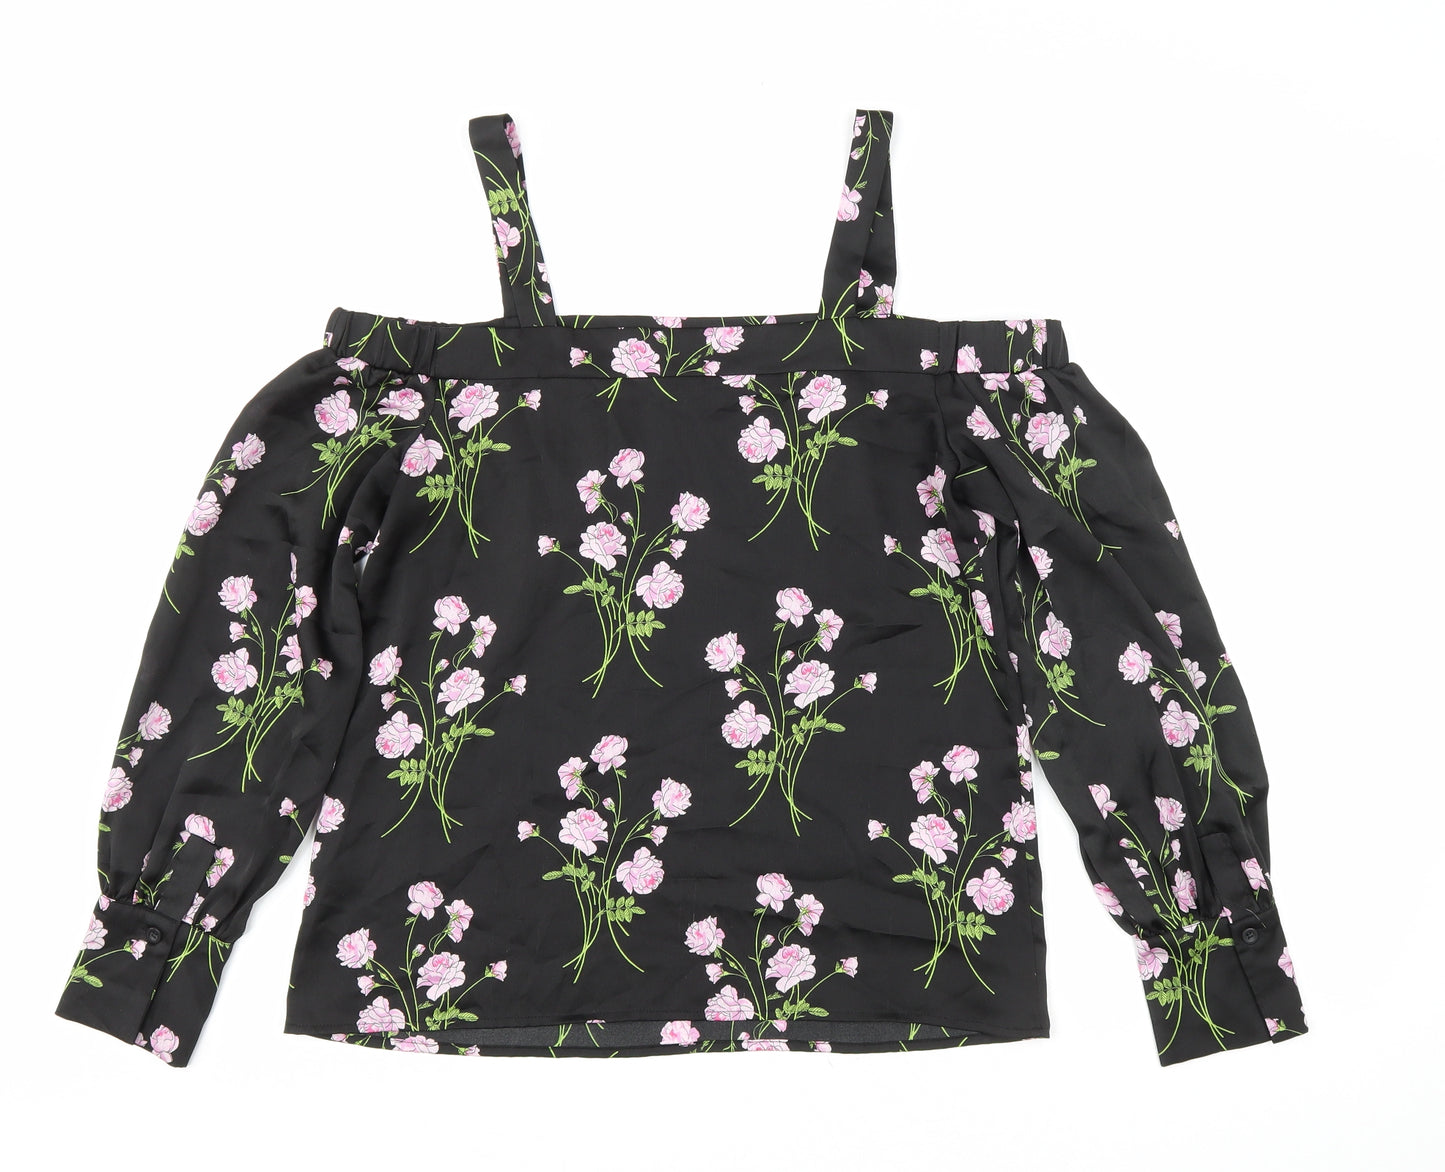 Warehouse Womens Black Floral Polyester Basic Blouse Size 10 Off the Shoulder - Cold Shoulder